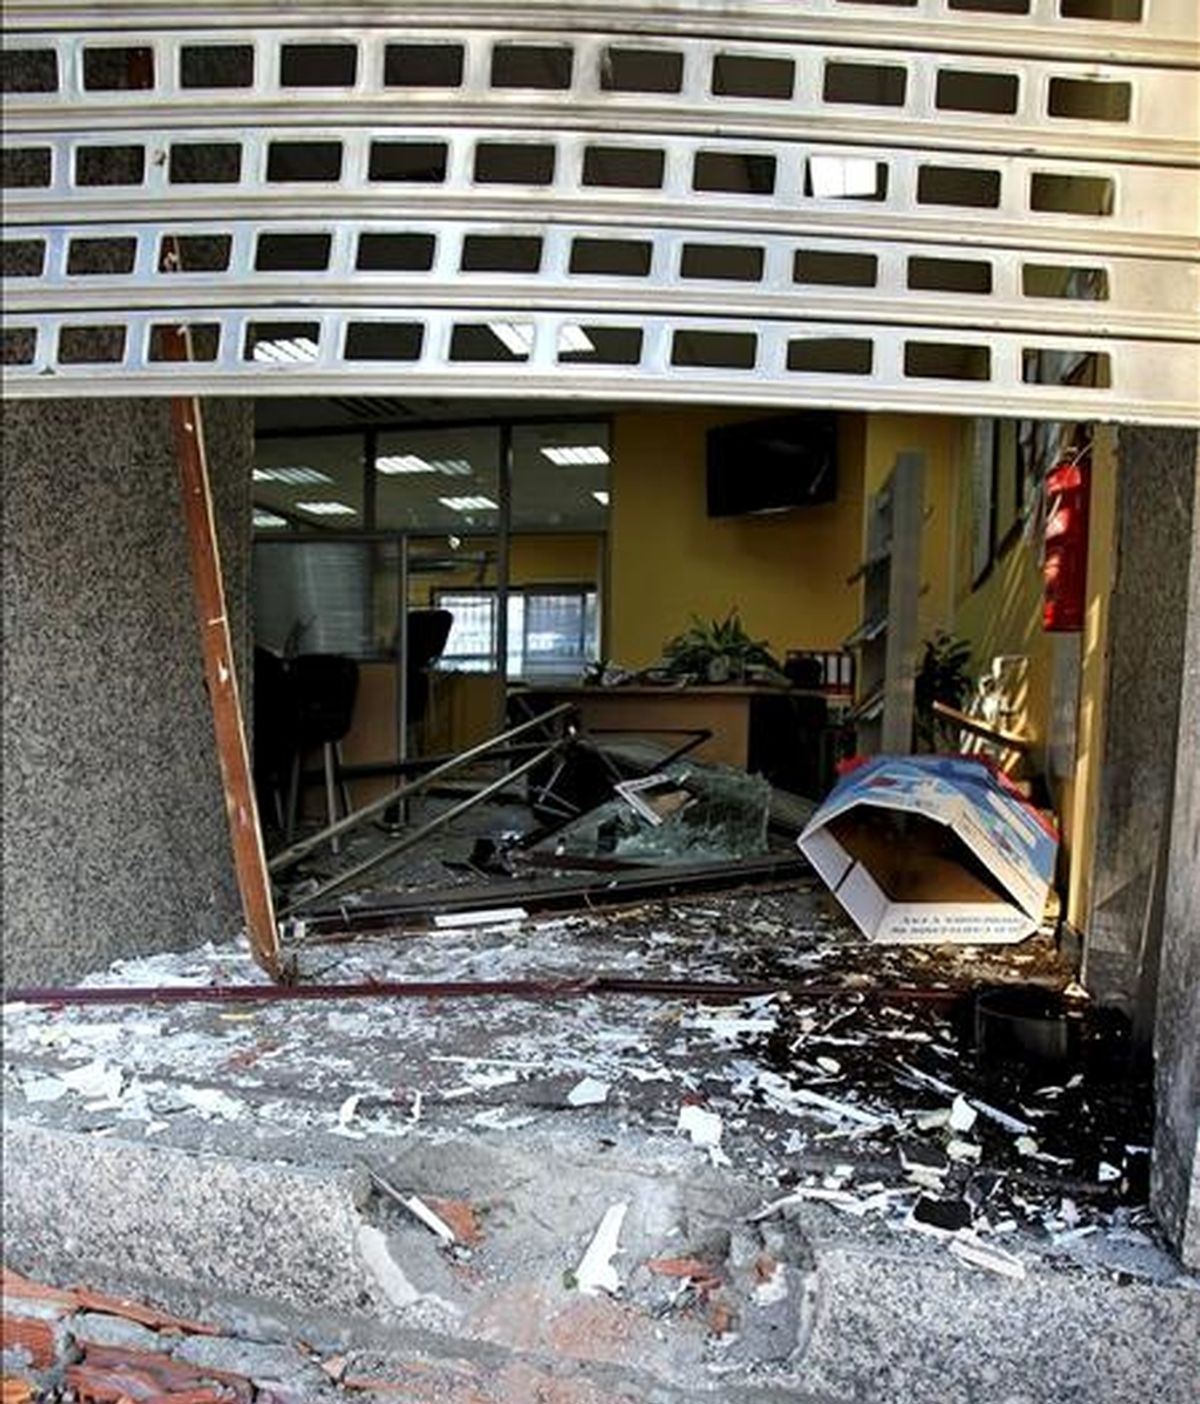 Estado en el que ha quedado la oficina de una empresa de fontanería, situada en la calle Martínez Garrido de Vigo, tras la explosión de un artefacto la pasada madrugada, si bien no ha causado daños personales. EFE